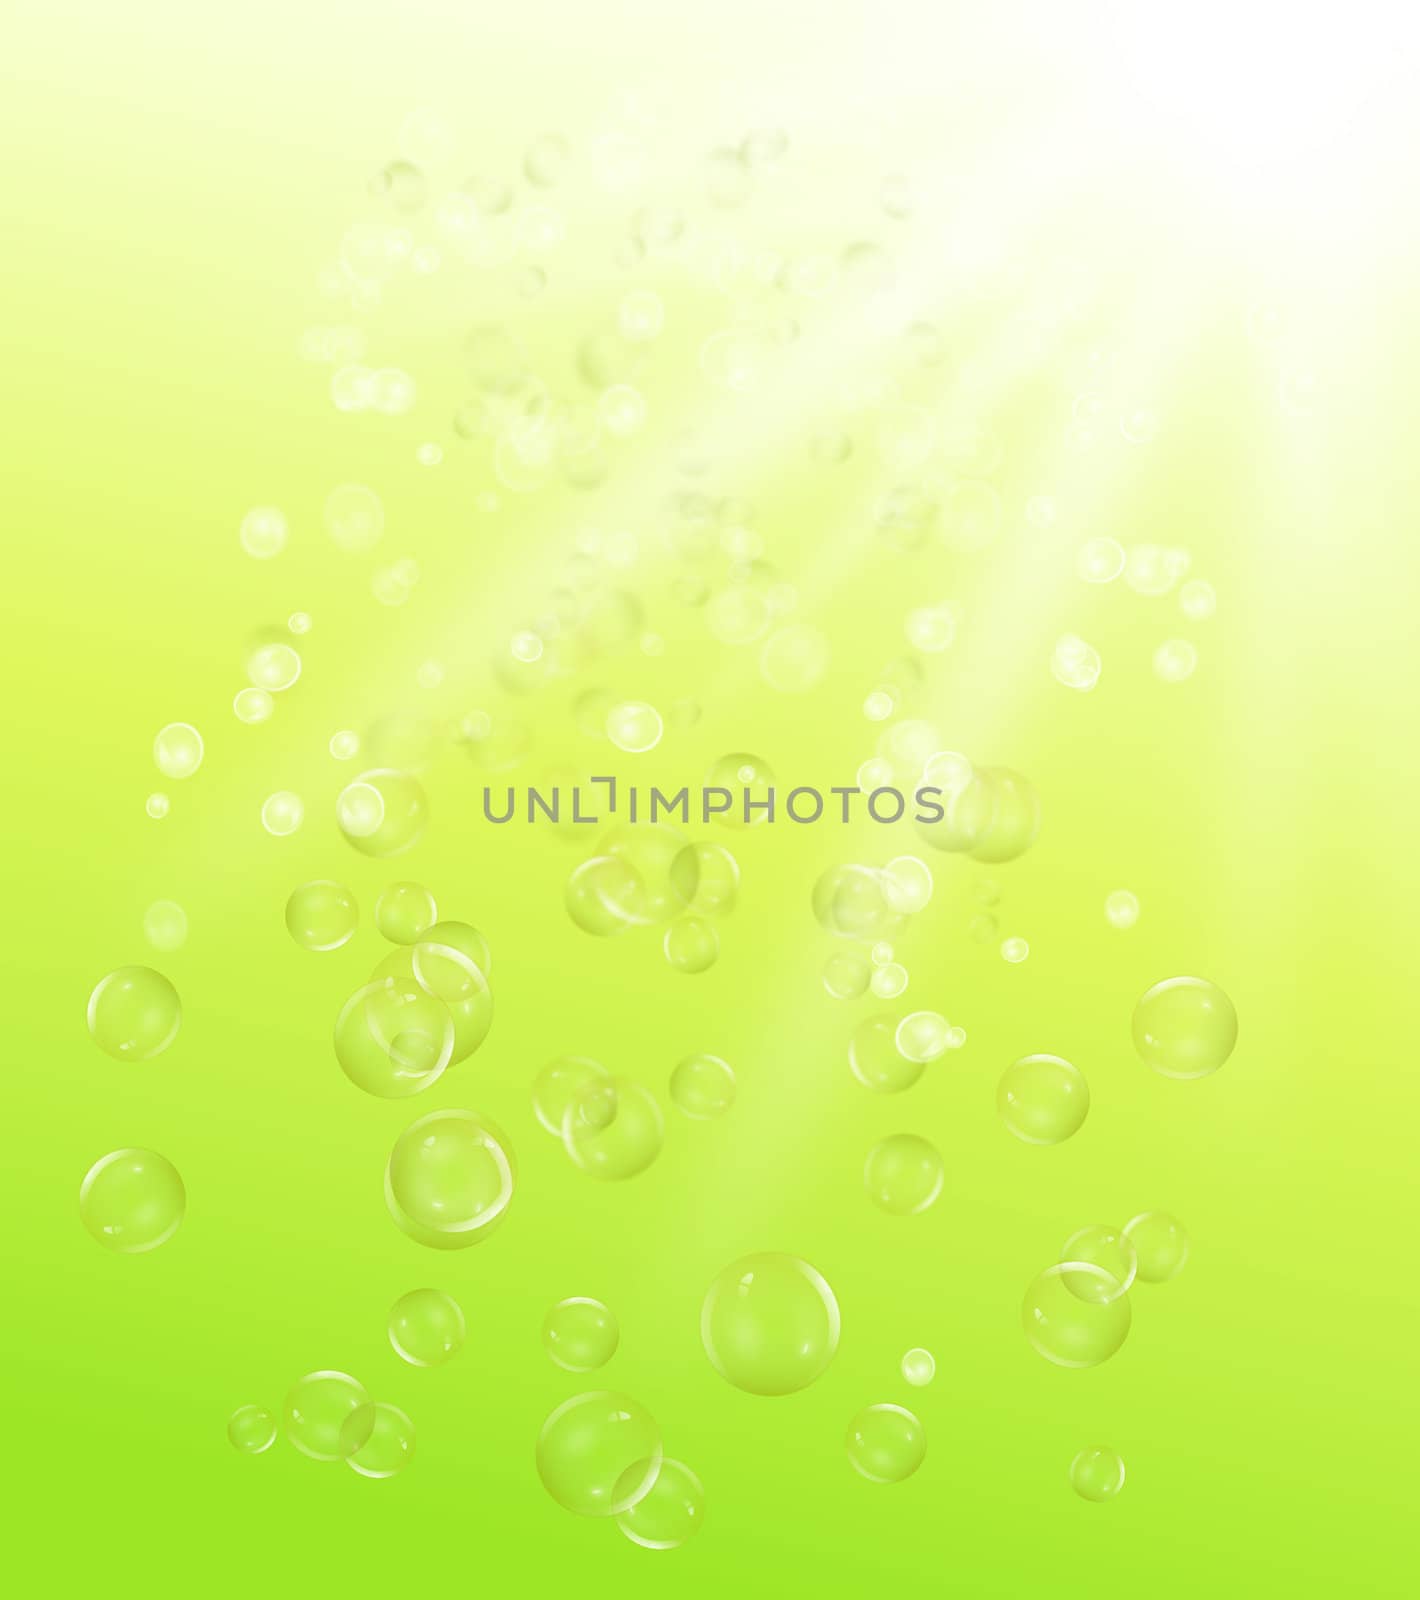 Underwater bubbles. by 72soul